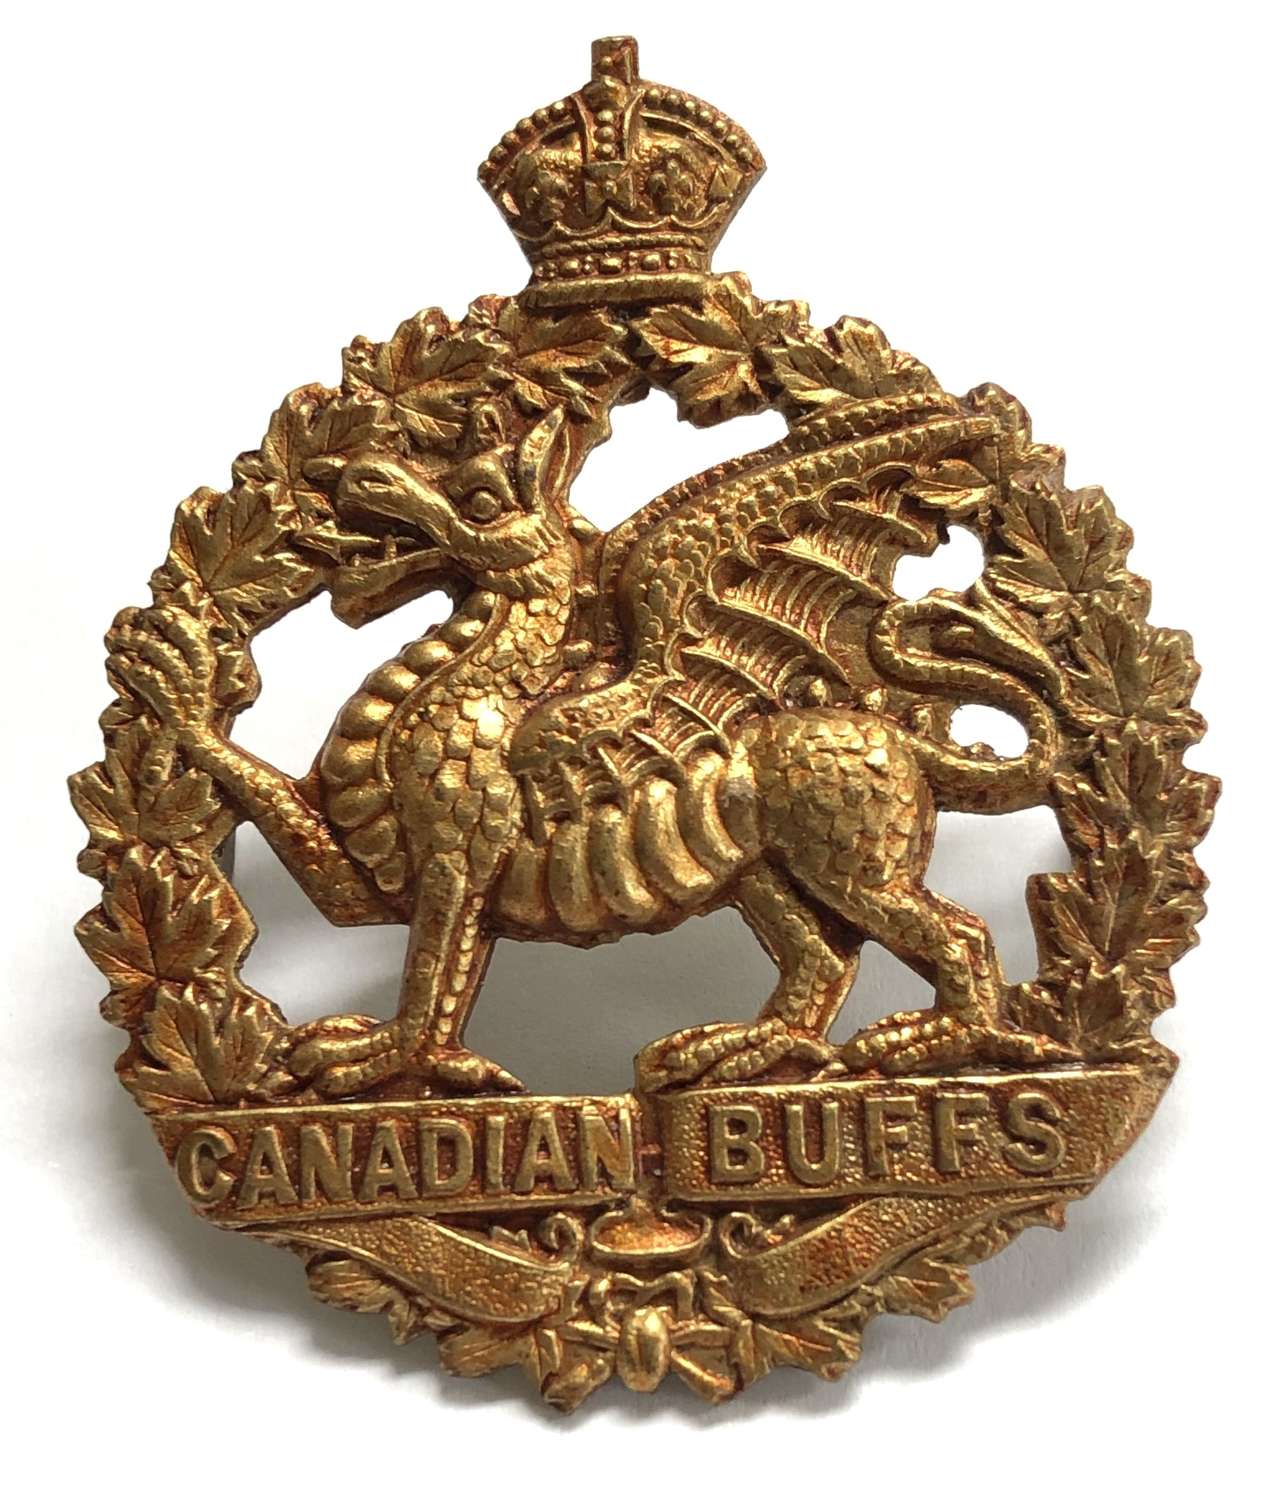 198th (Canadian Buffs) Bn. CEF WW1 Cap Badge